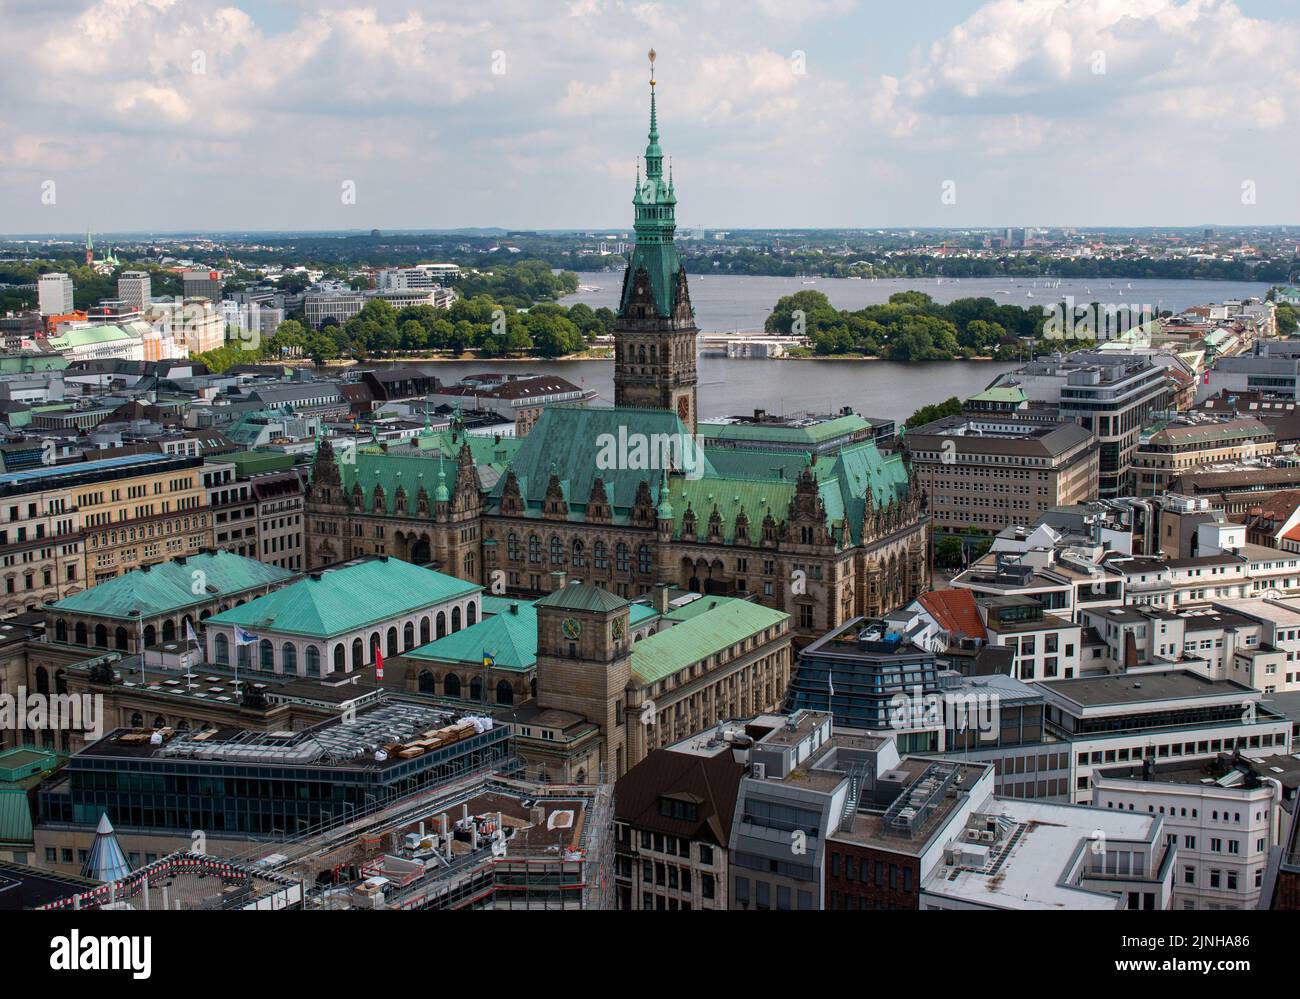 Hamburgo, Alemania, junio de 11th 2022. Vista aérea del ayuntamiento y otros edificios desde la iglesia de San Nikolai Foto de stock